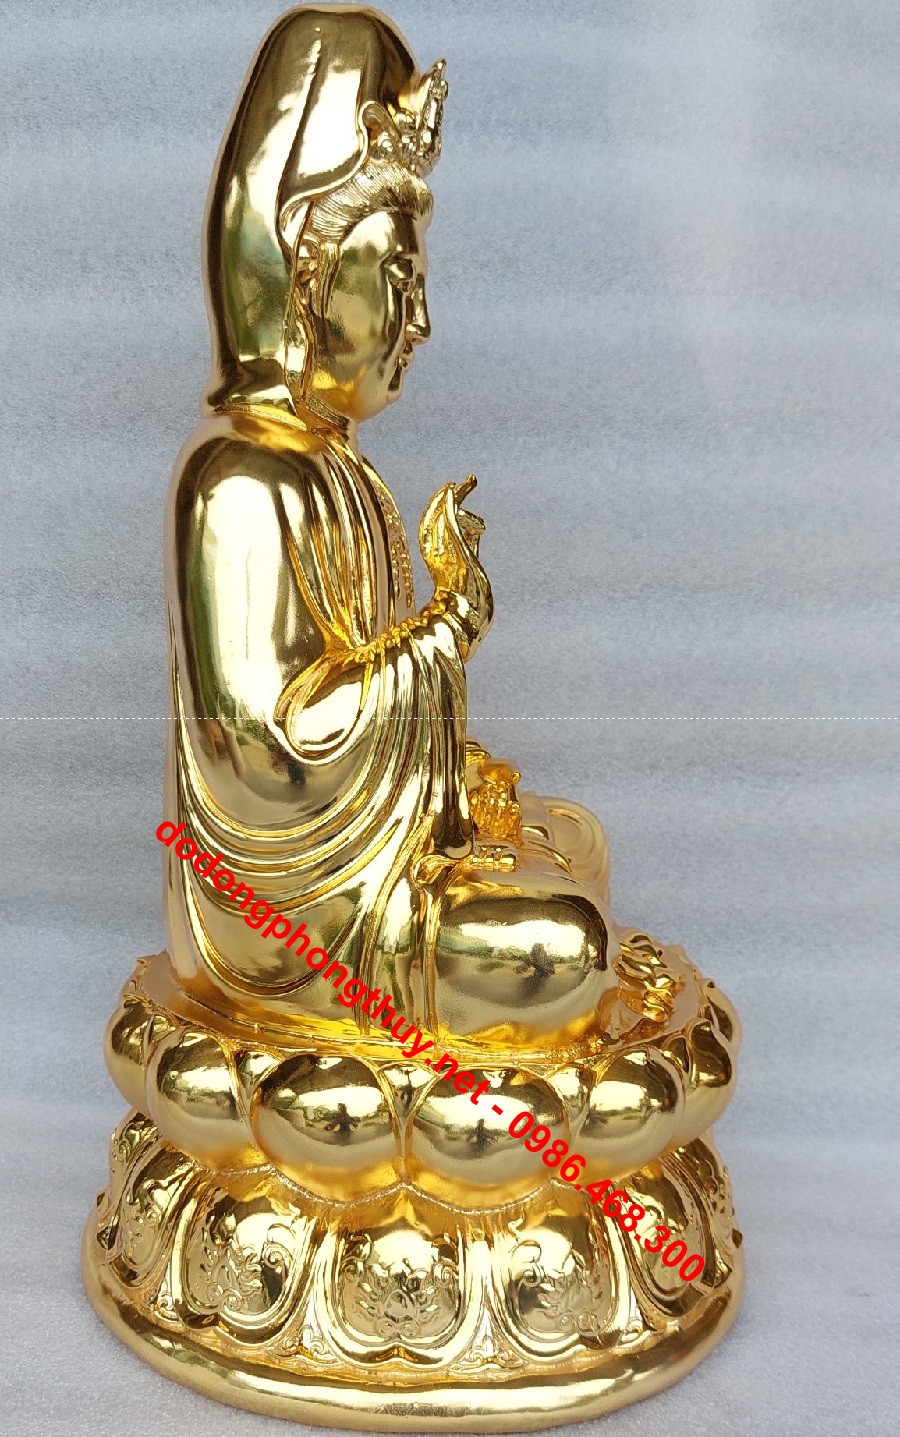 Tải hình ảnh Phật Quan Thế Âm Bồ Tát đẹp và thanh tịnh nhất | Hình ảnh, Hình,  Tranh